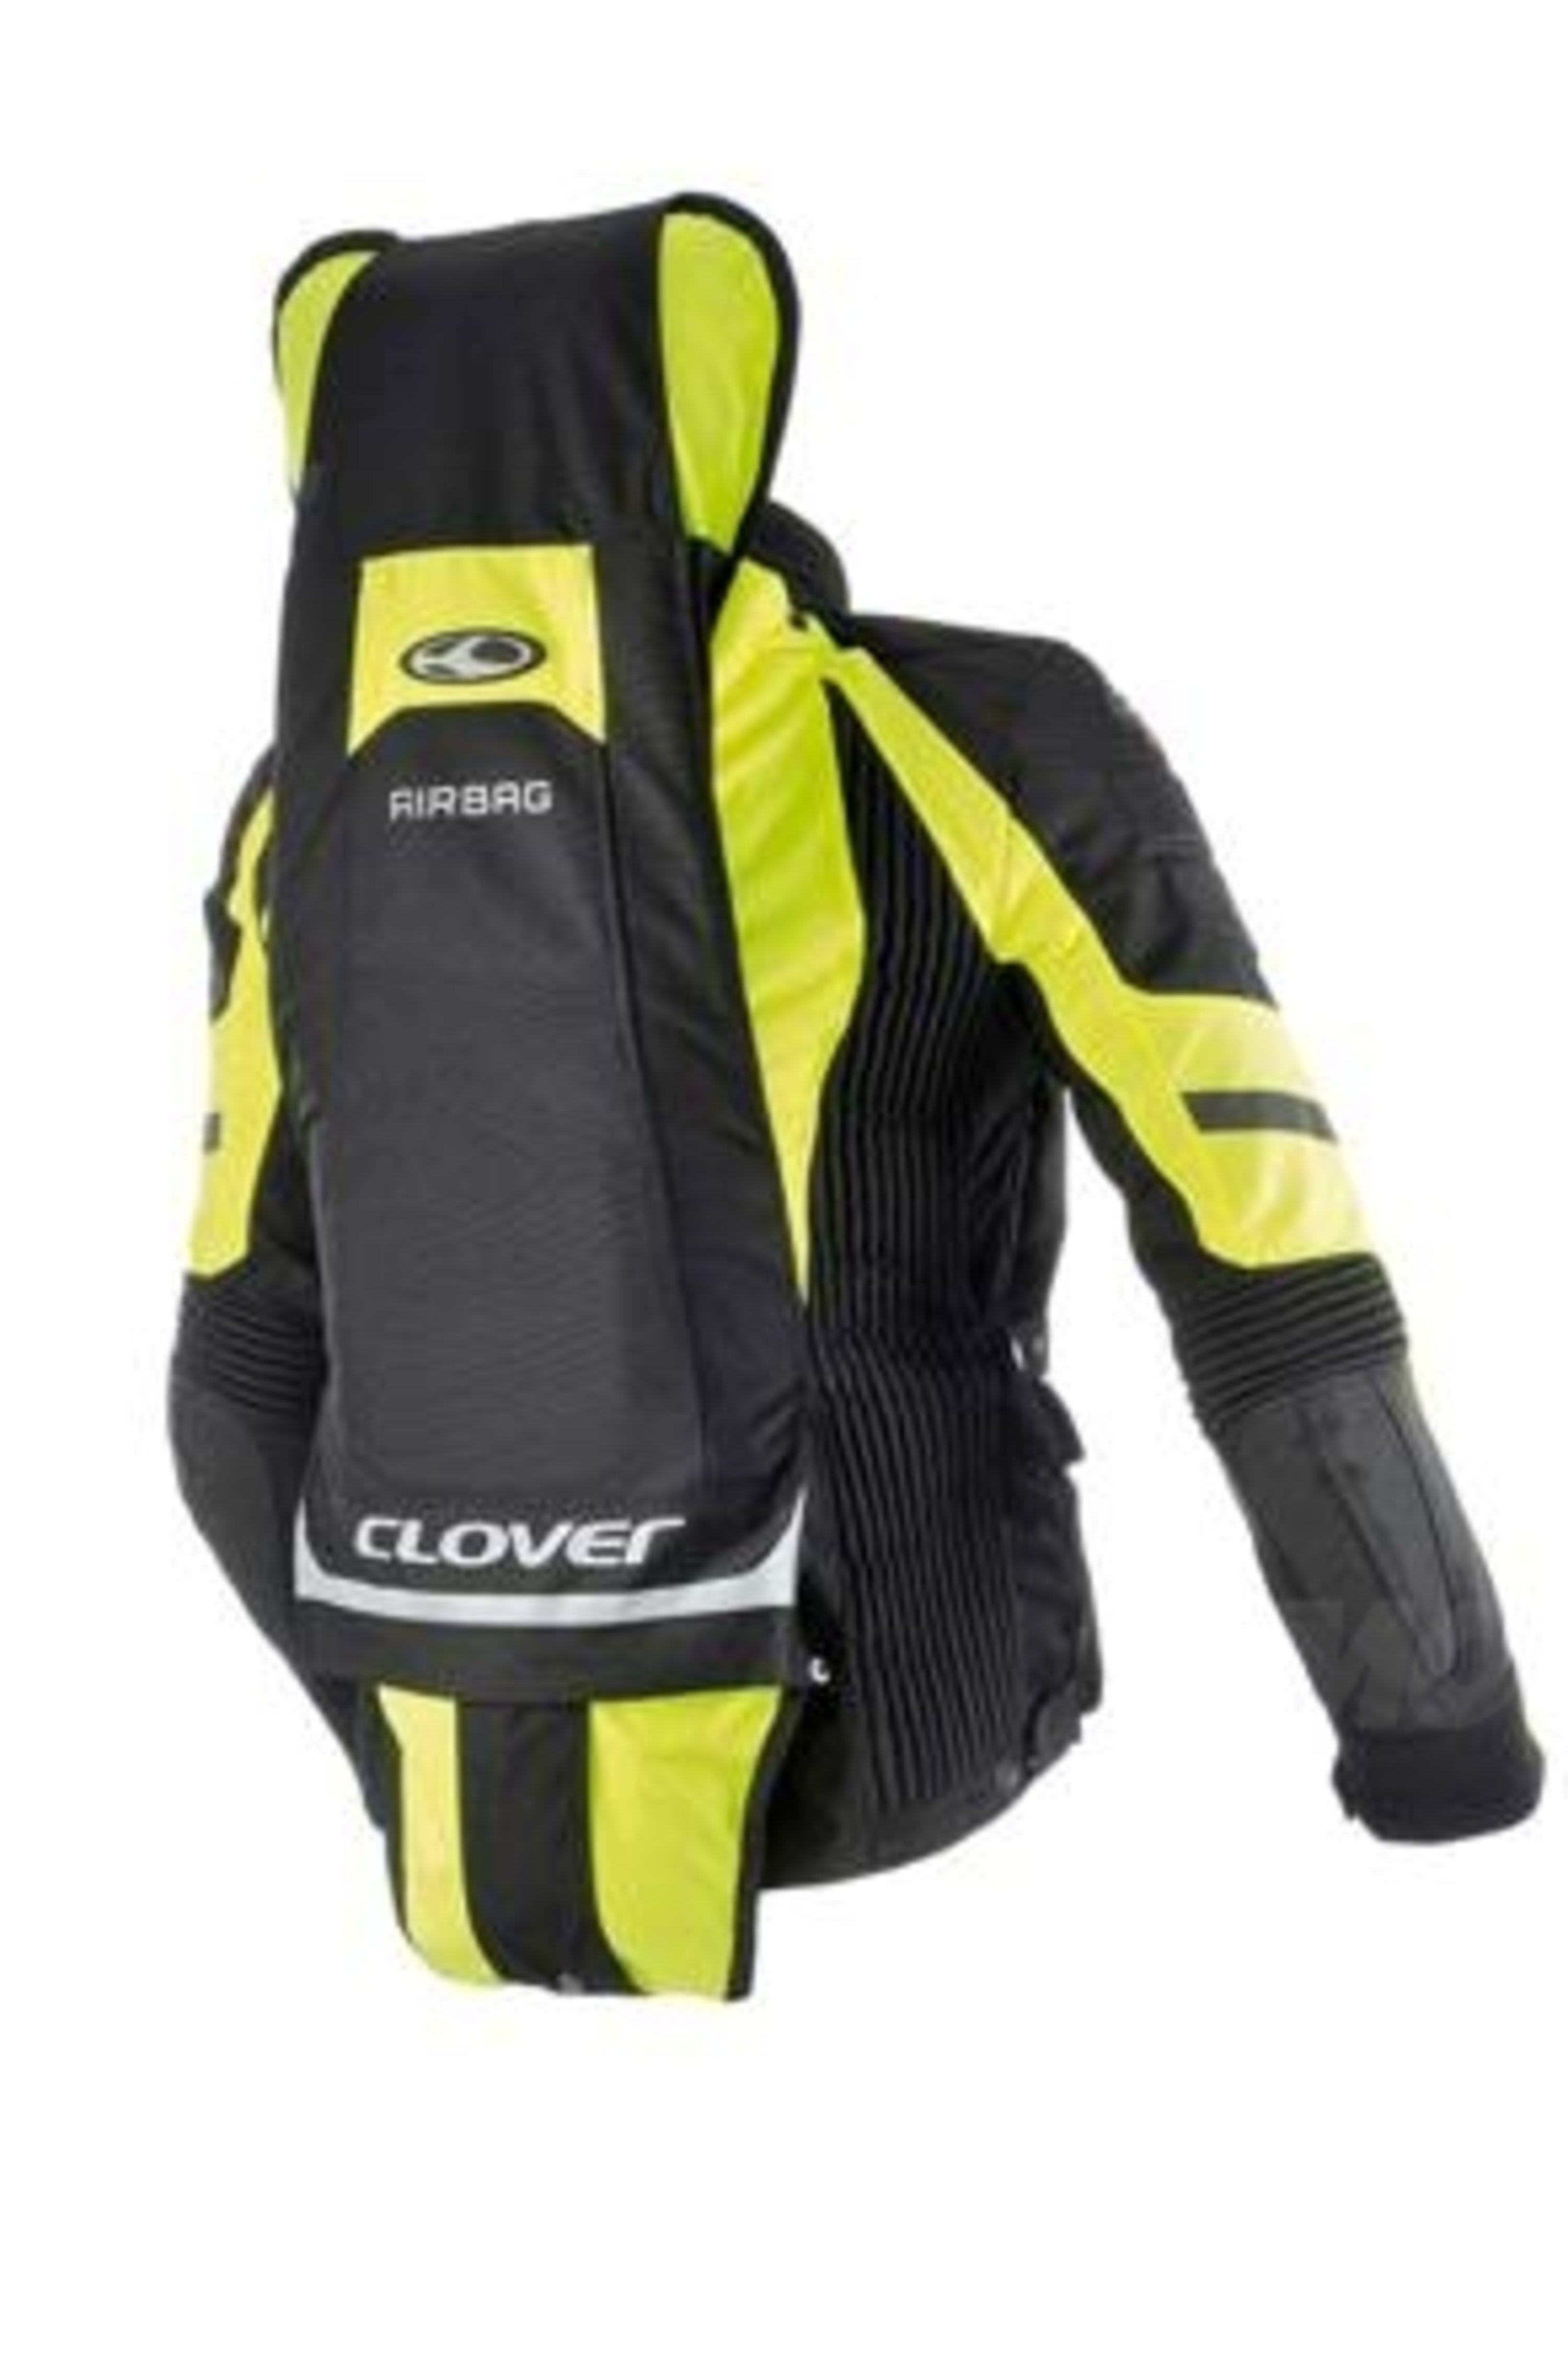 Clover presenta la nuova linea di giacche Airbag